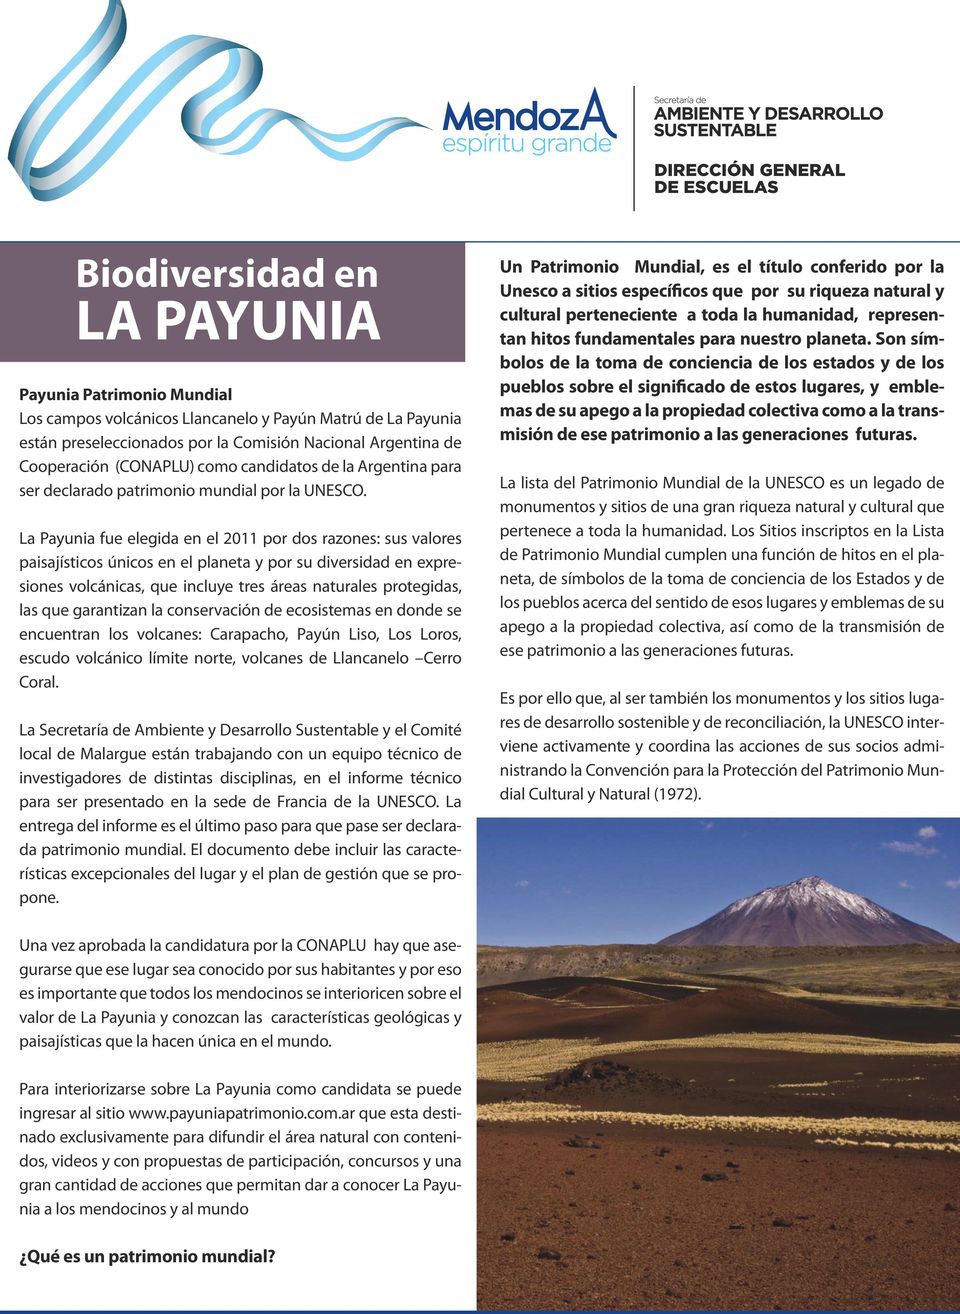 La Payunia fue elegida en el 2011 por dos razones: sus valores paisajísticos únicos en el planeta y por su diversidad en expresiones volcánicas, que incluye tres áreas naturales protegidas, las que